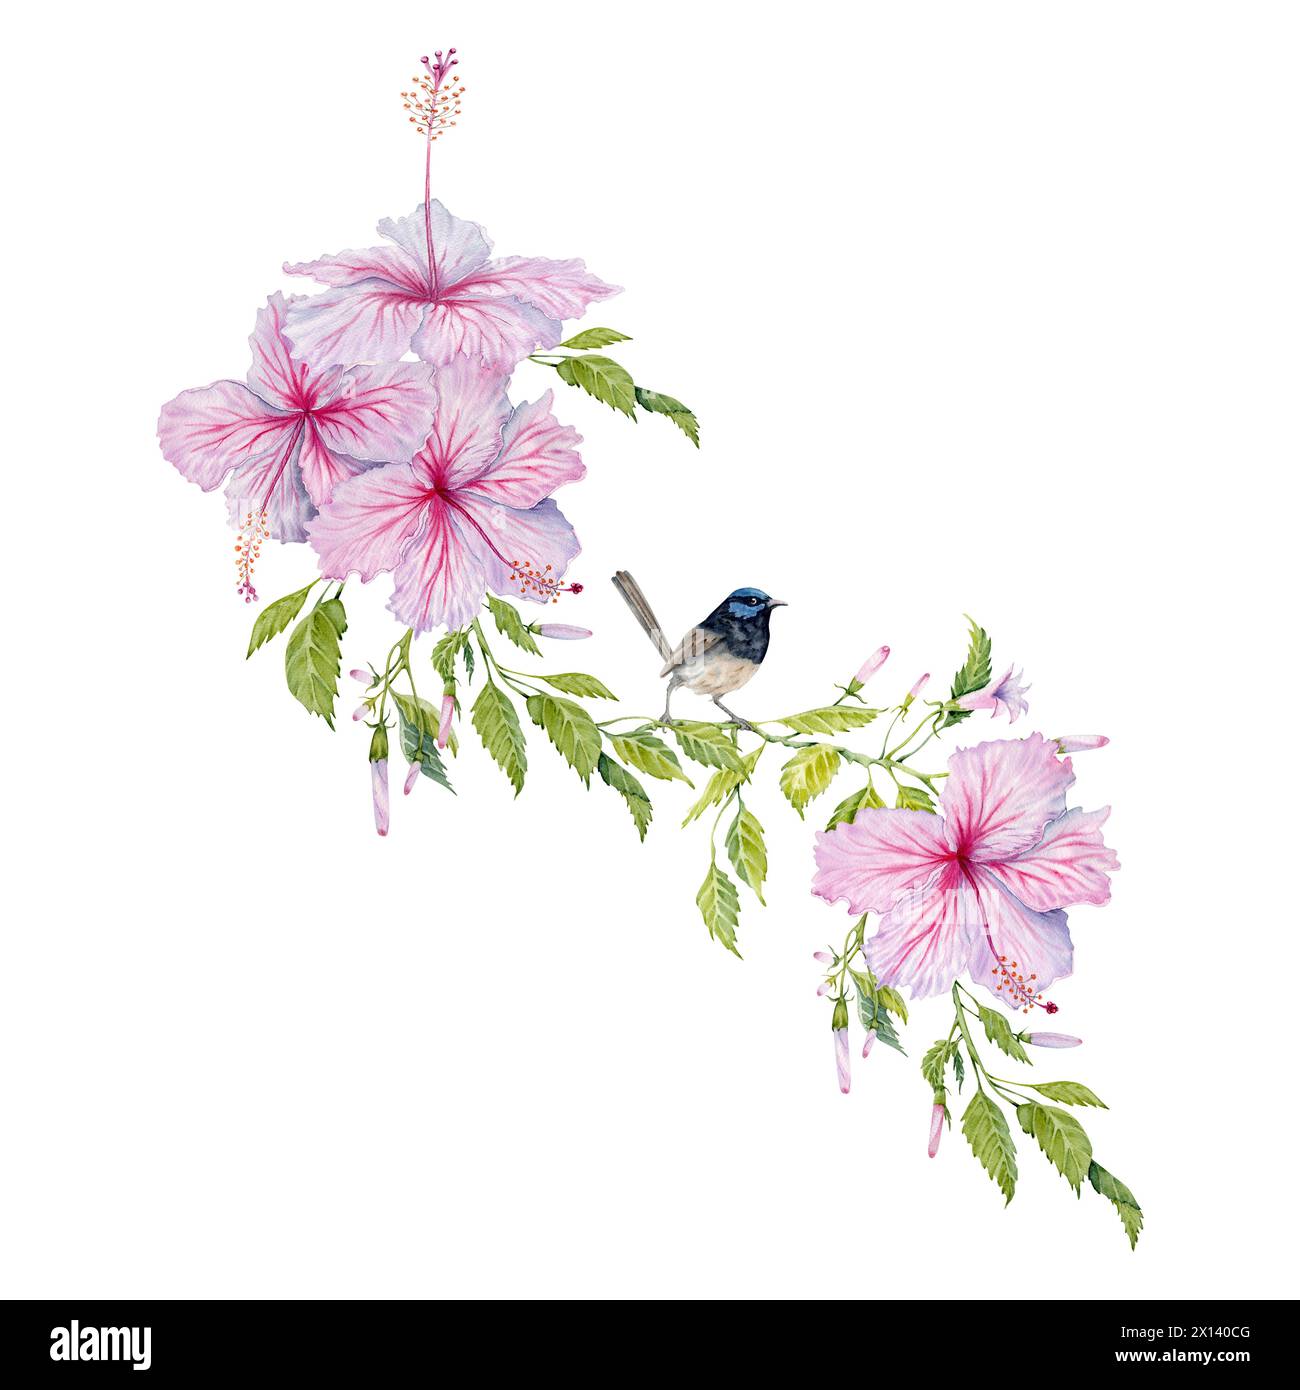 Fleurs d'hibiscus roses avec des feuilles vertes et une petite composition d'oiseau de fée bleu. Illustration aquarelle isolée sur fond blanc. Banque D'Images